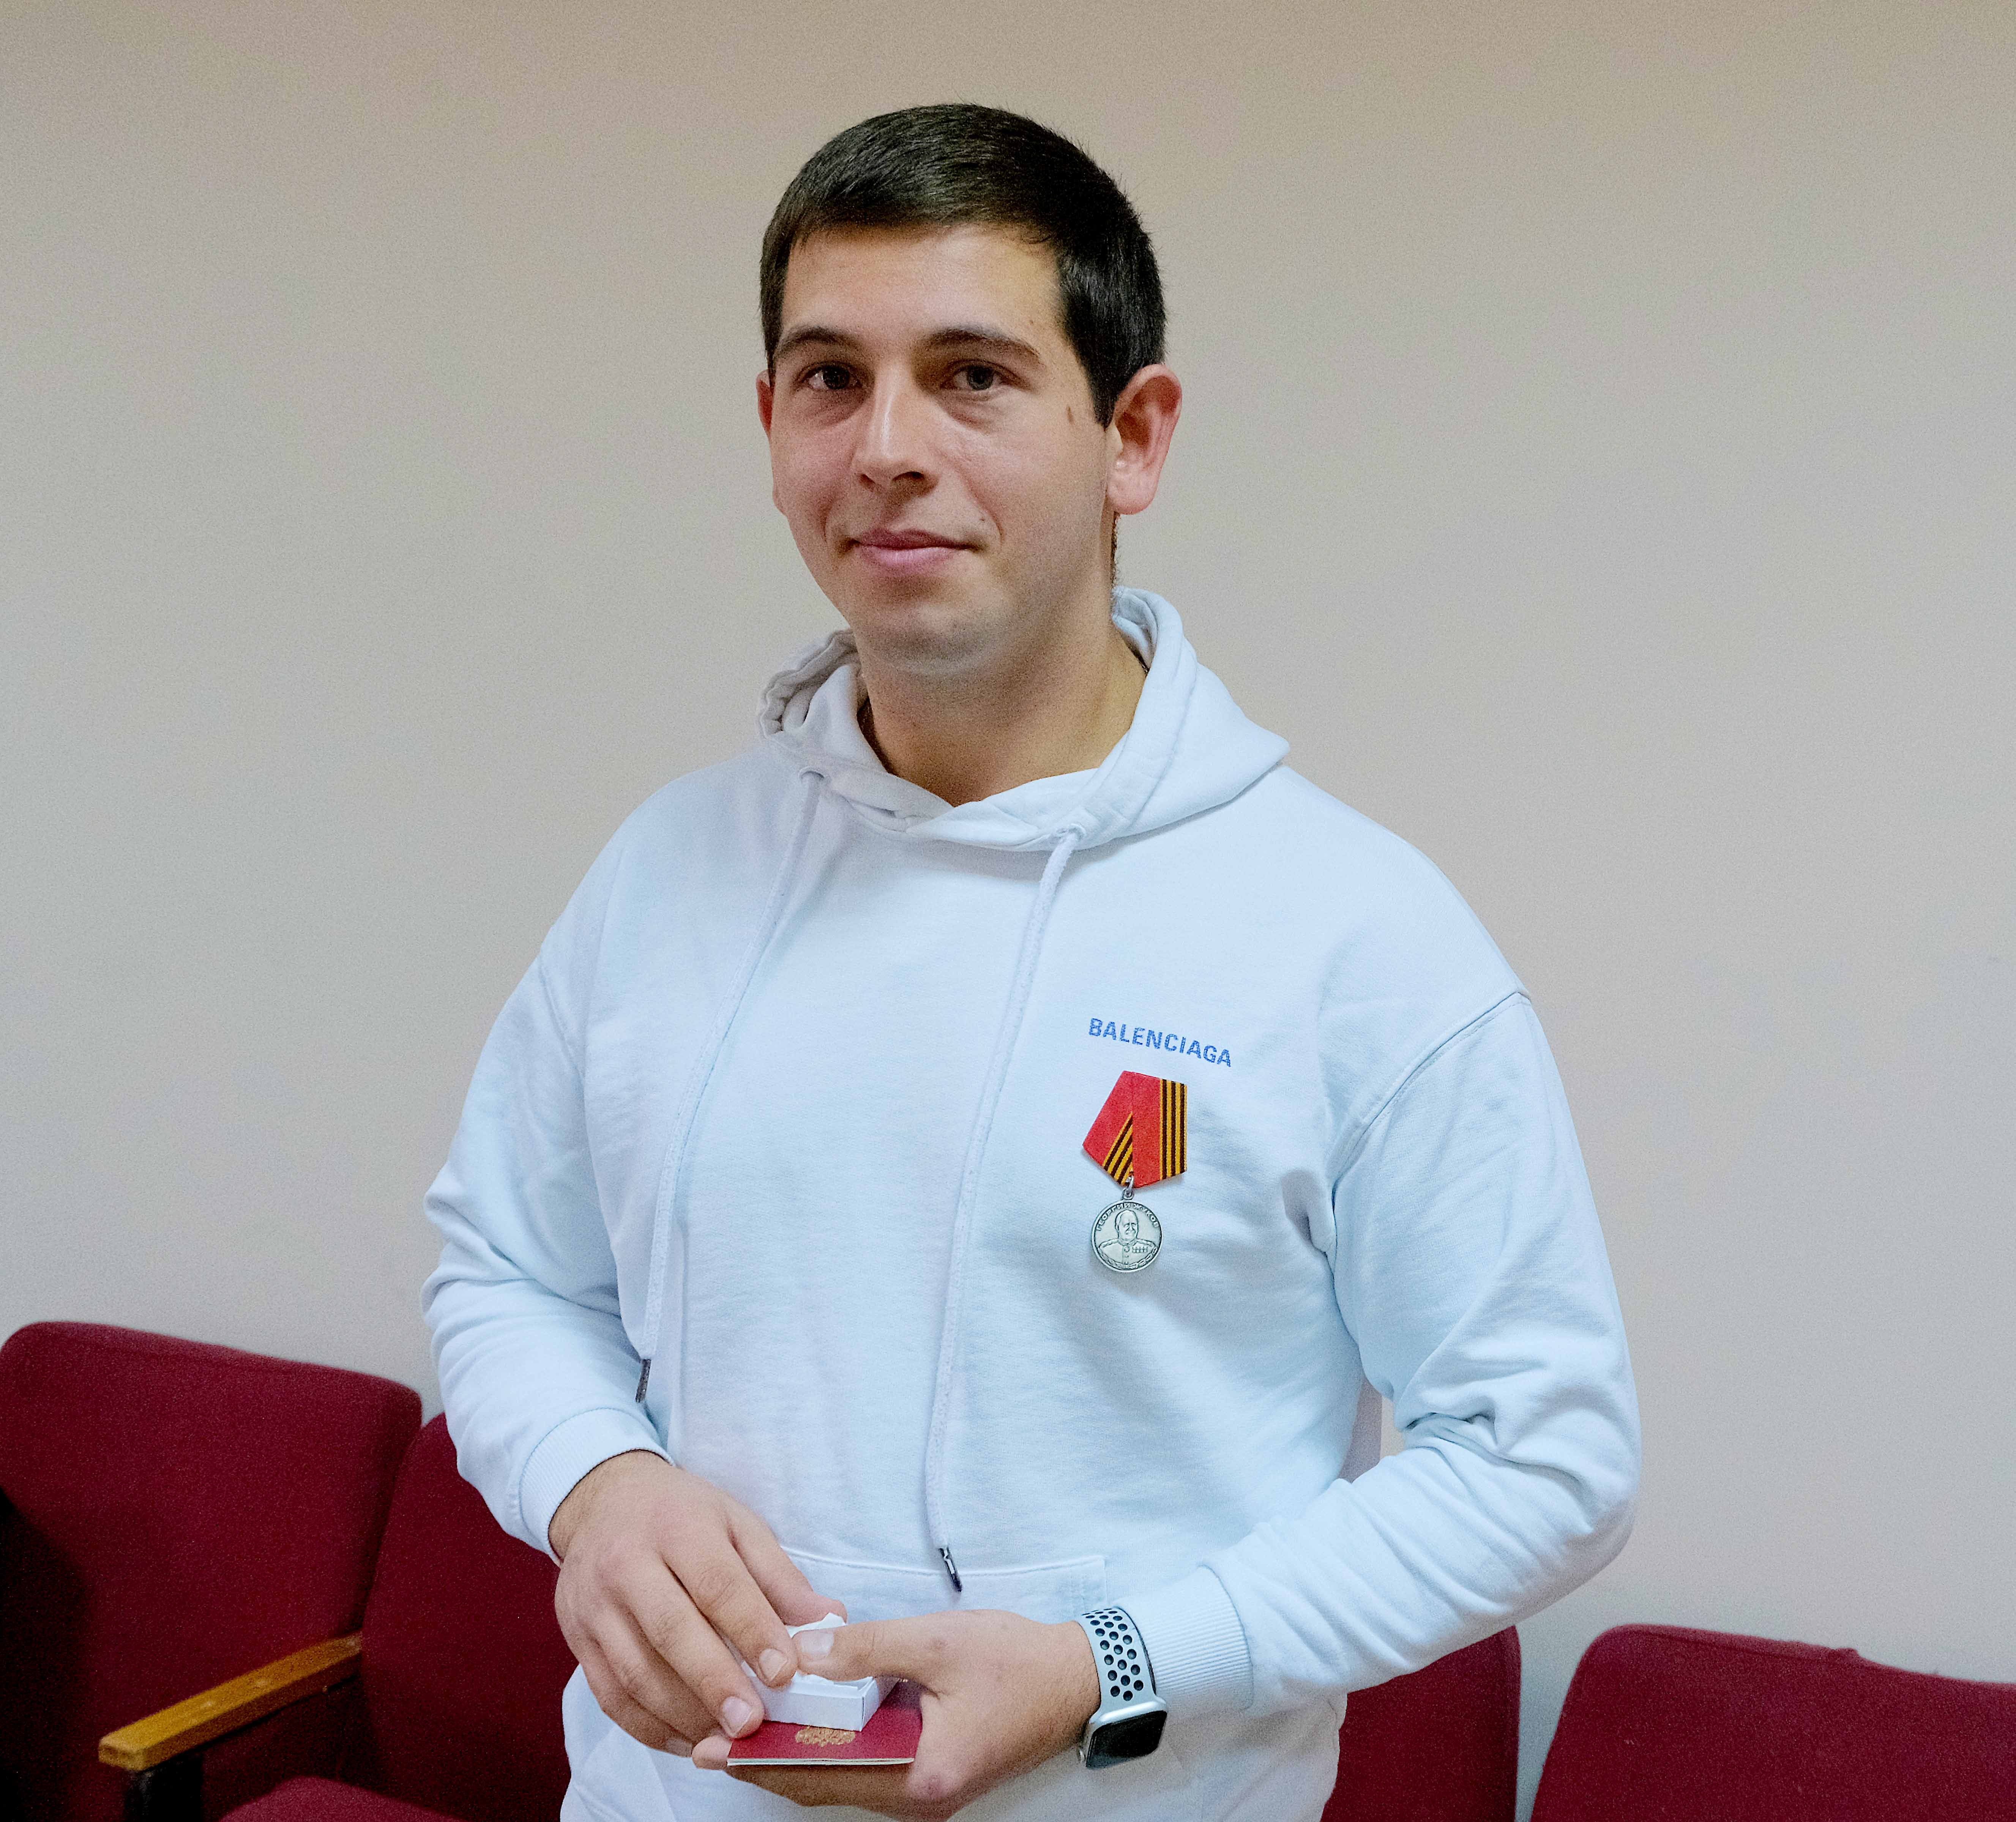 Владислав Александрович Курылев из г. Кимры награжден медалью Жукова за мужество и отвагу, проявленные в ходе СВО на территории Украины